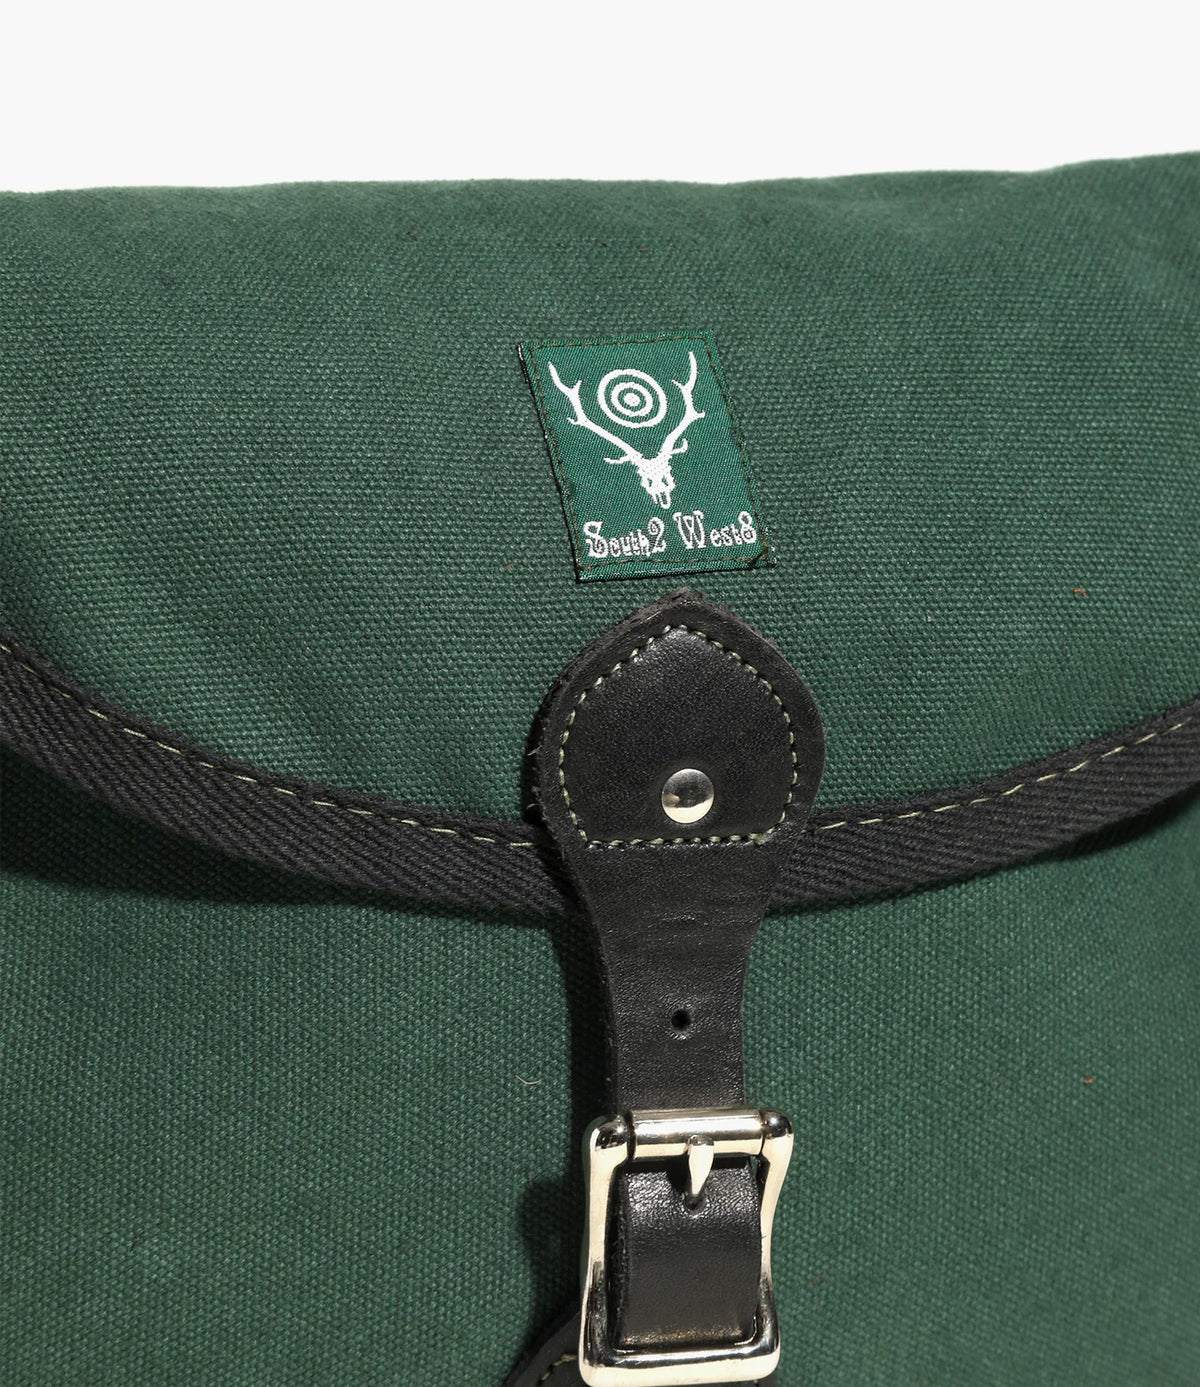 South2 West8 18oz Canvas Binocular Bag - Medium - Green